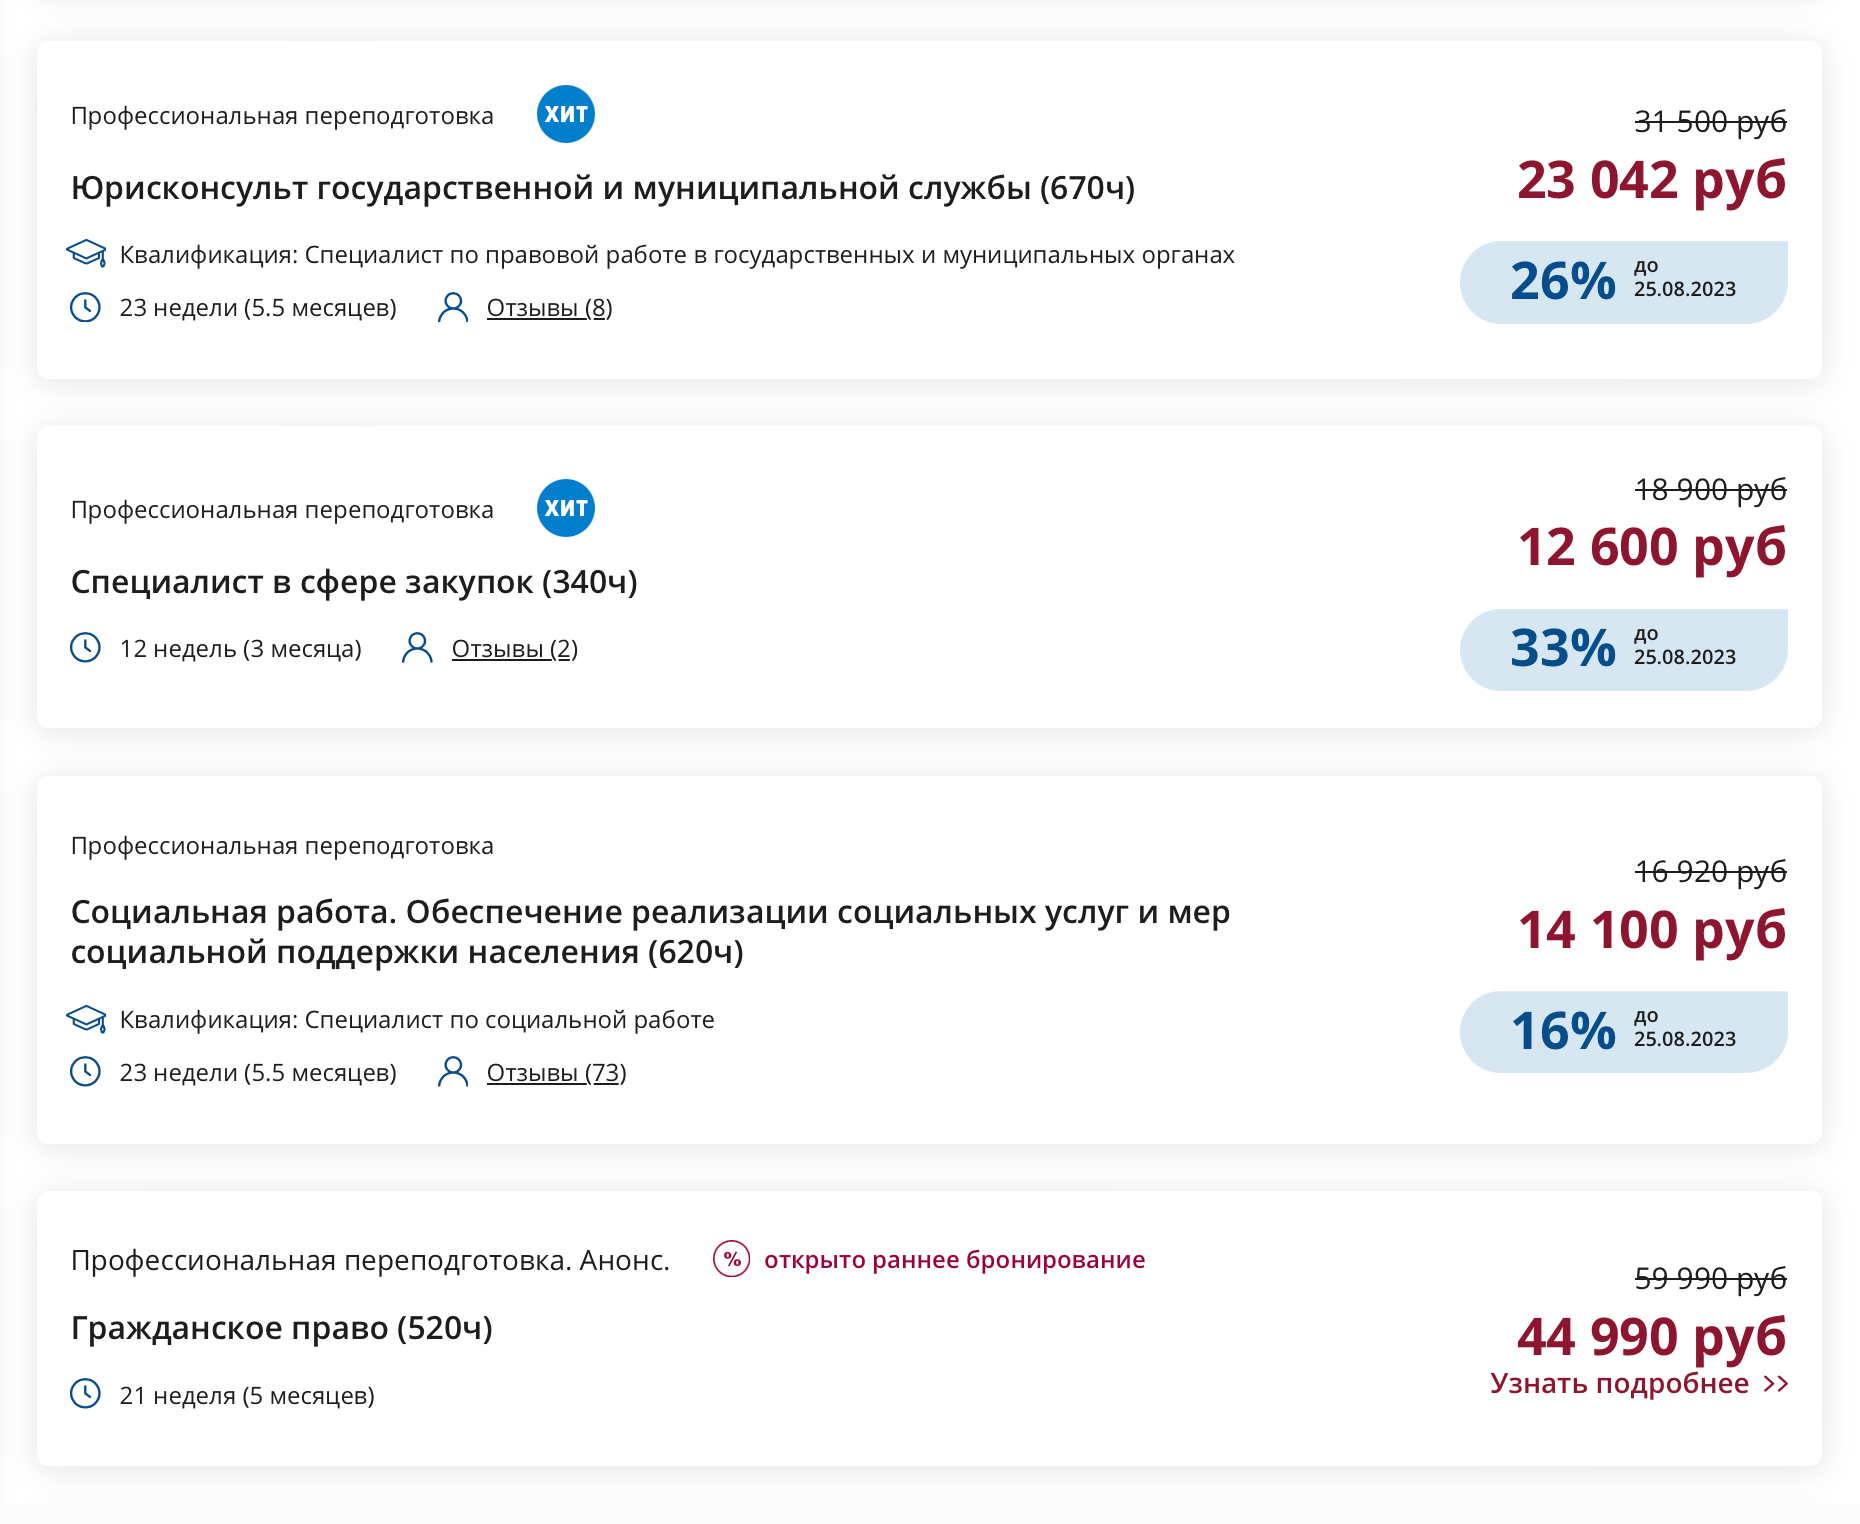 Примеры программ переподготовки, связанных с юридической работой. Источник: niidpo.ru